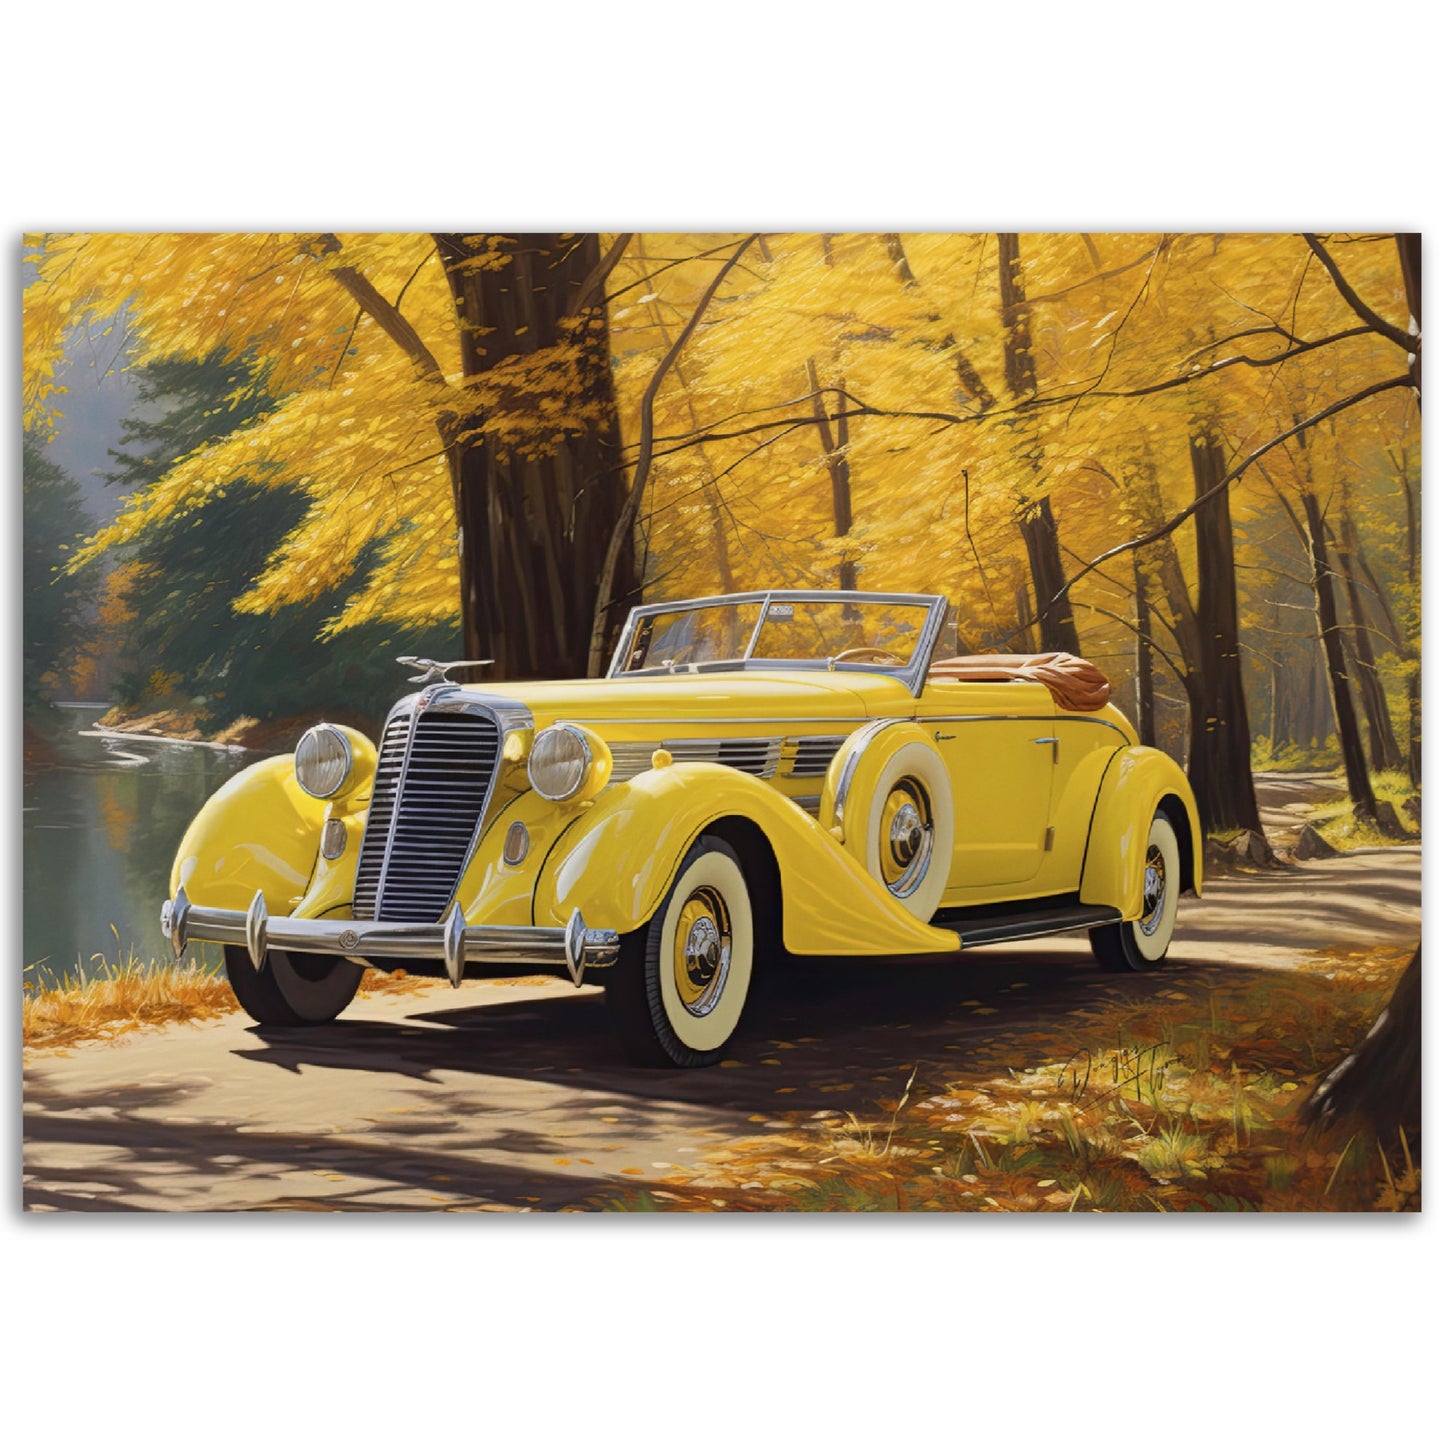 »Canary yellow 1930s Auburn vintage car«